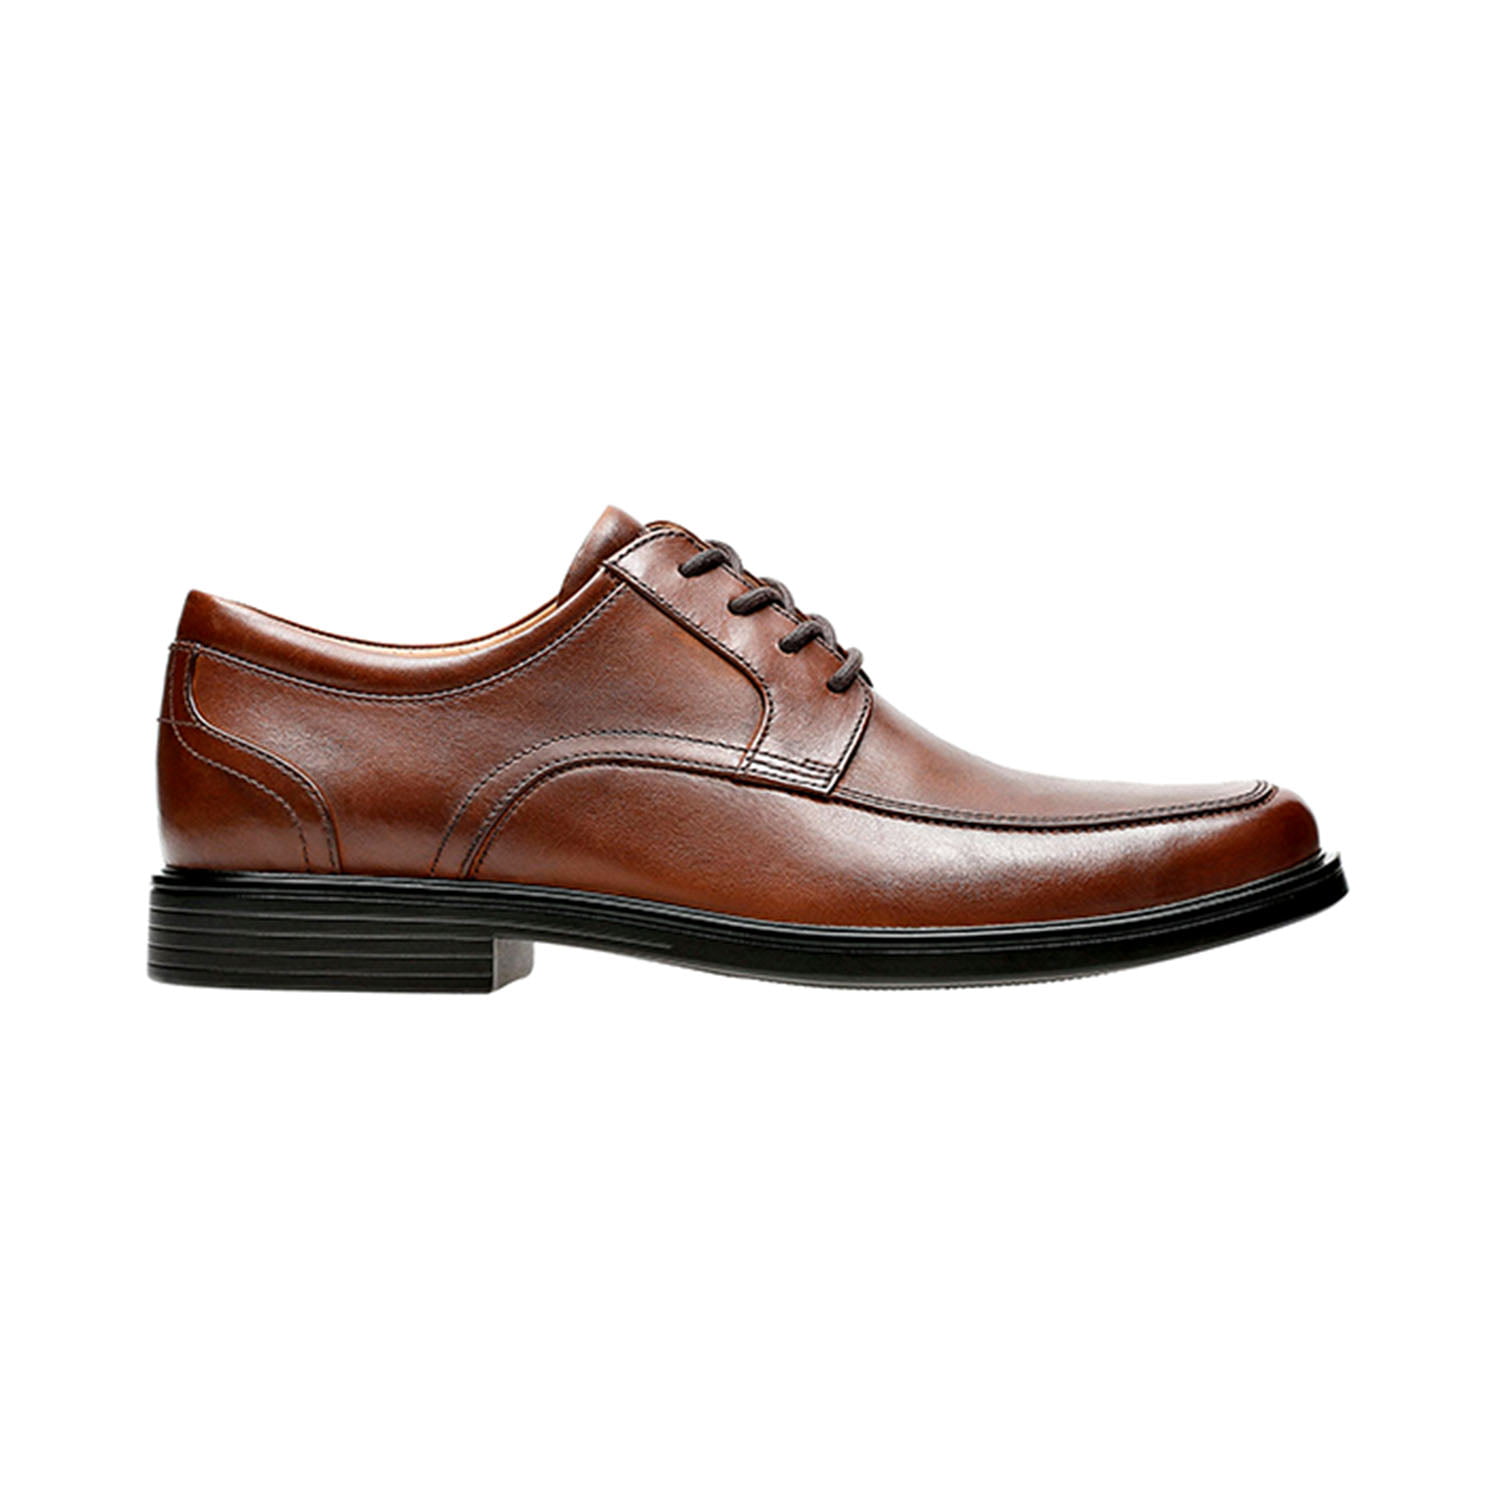 Clarks Un Aldric Park (Extra Wide) Mens Shoes Tan Leather 26132672-w ...